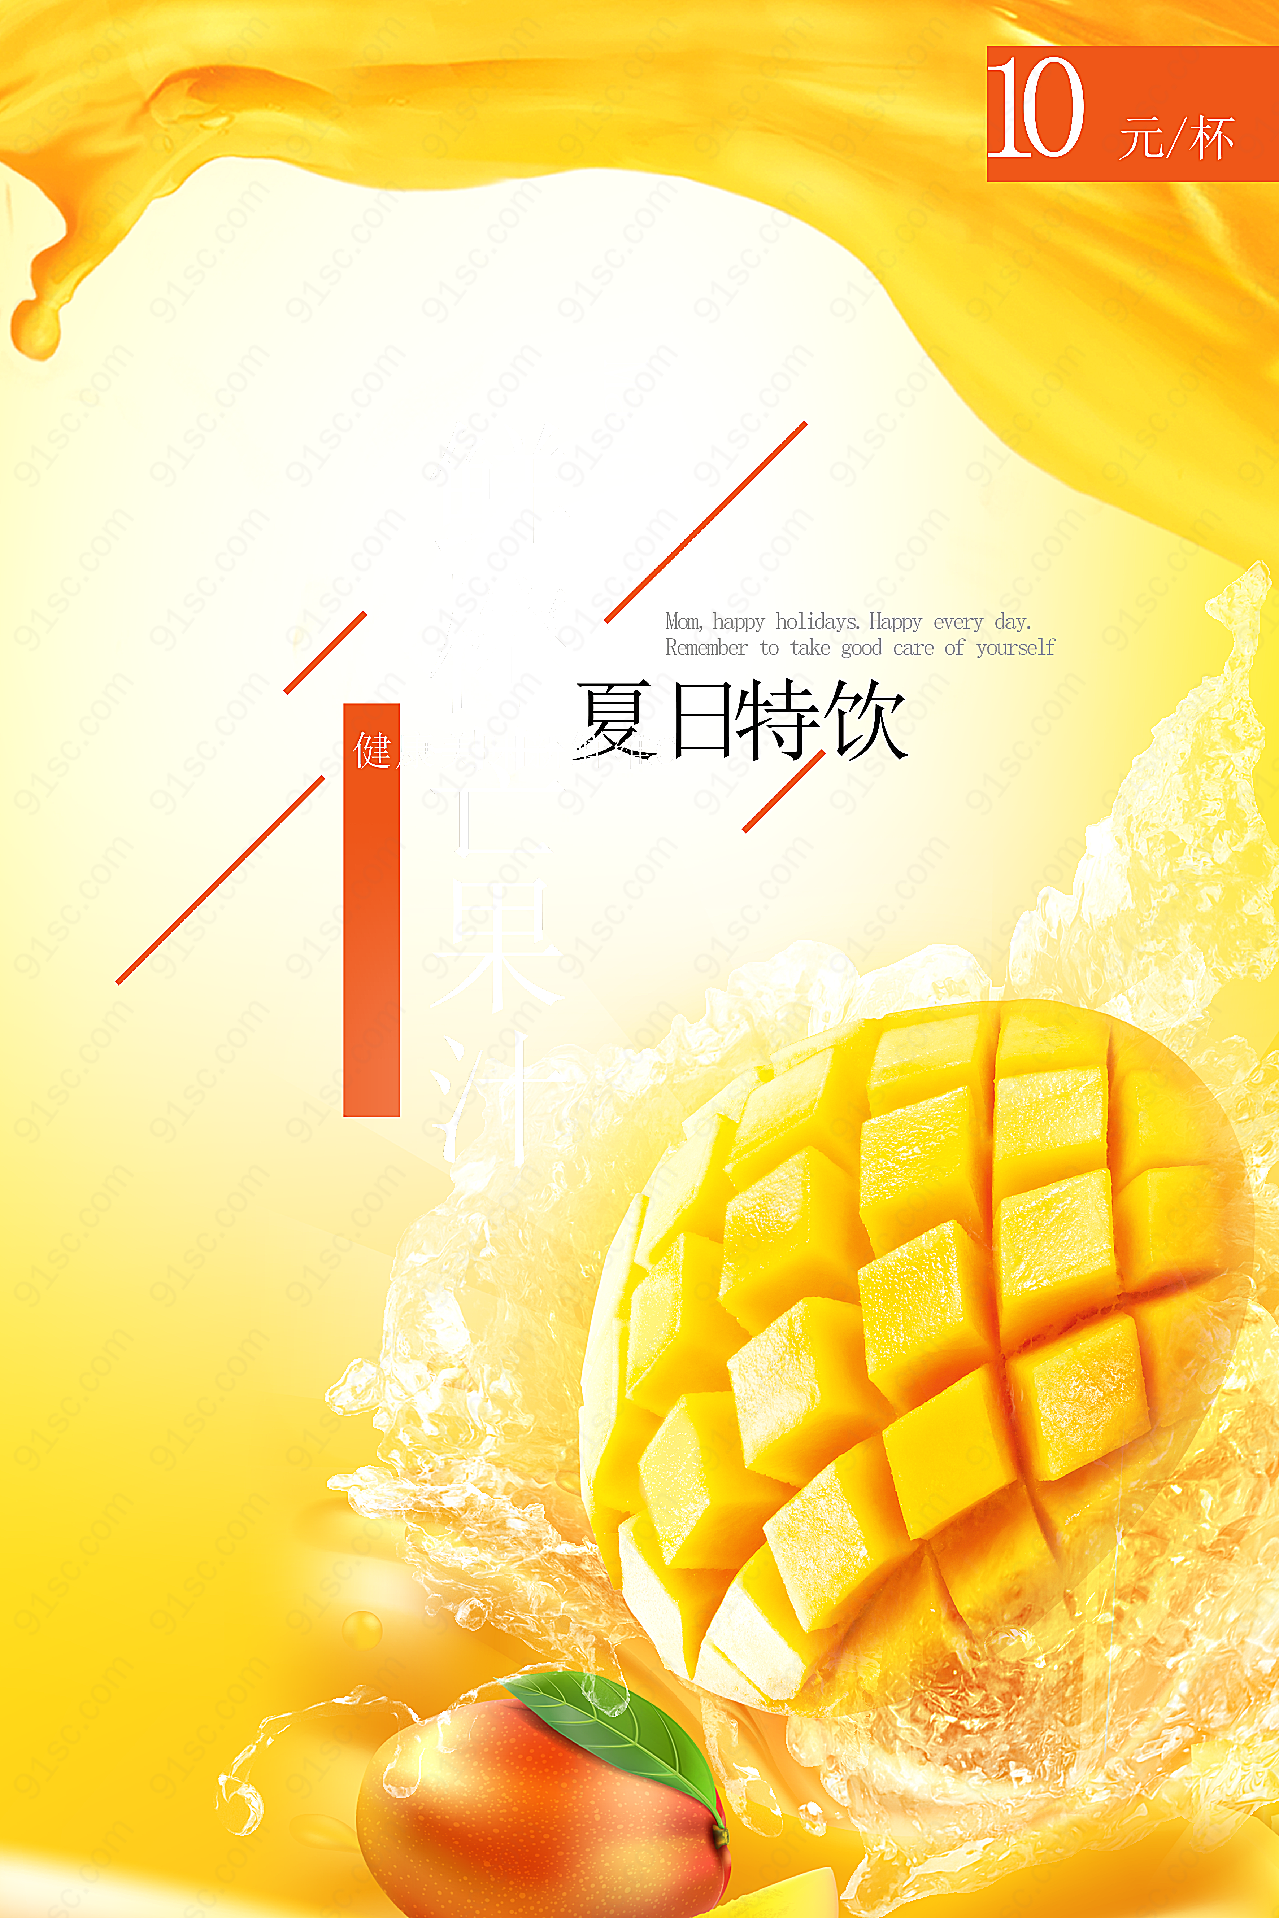 夏日芒果汁广告高清摄影